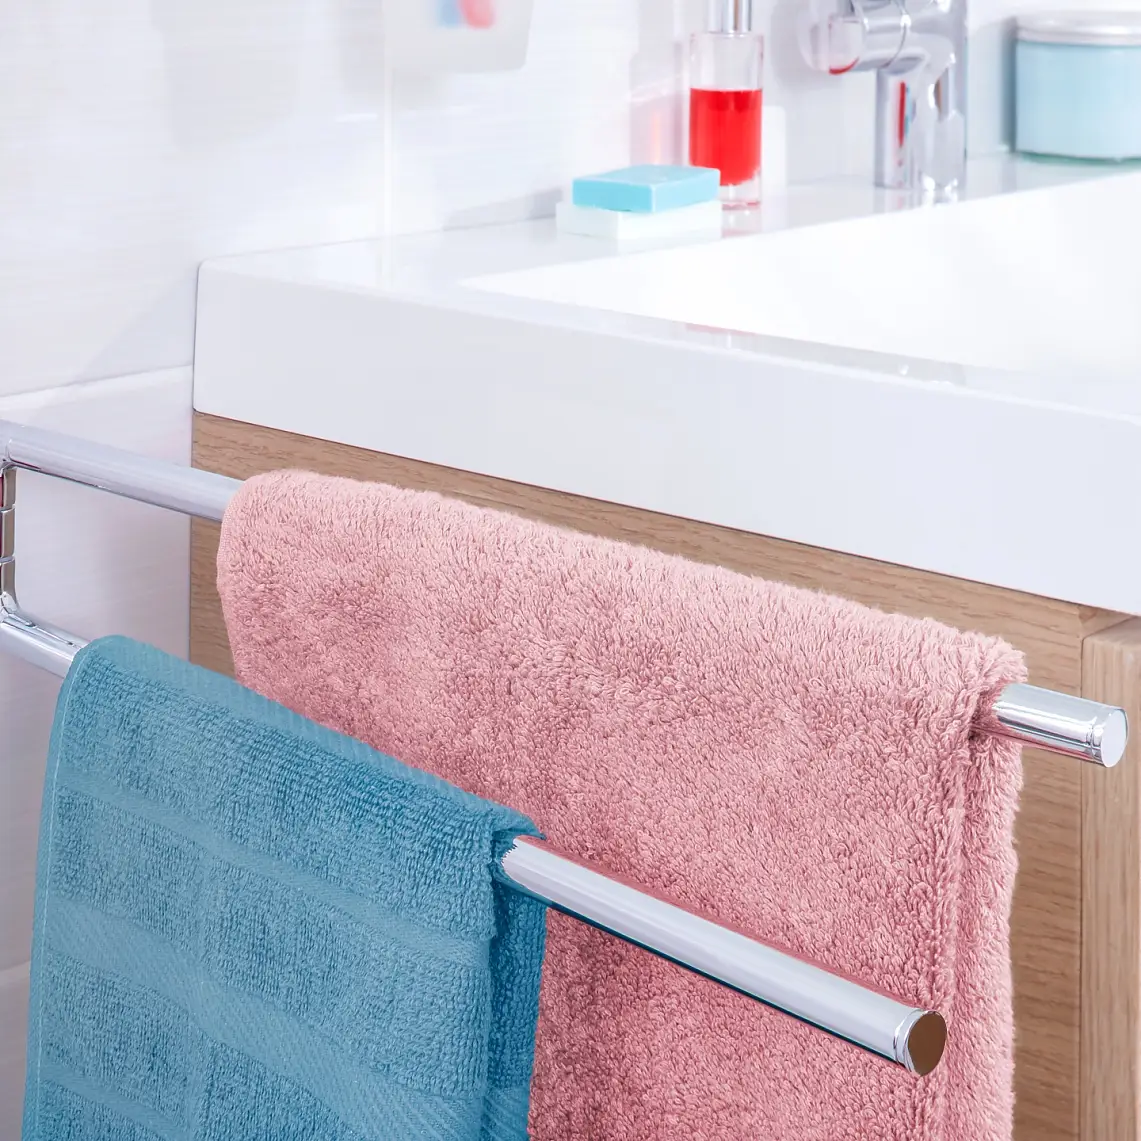 可将您的毛巾放置在您触手可及的地方，并提供毛巾使用后晾干的空间。